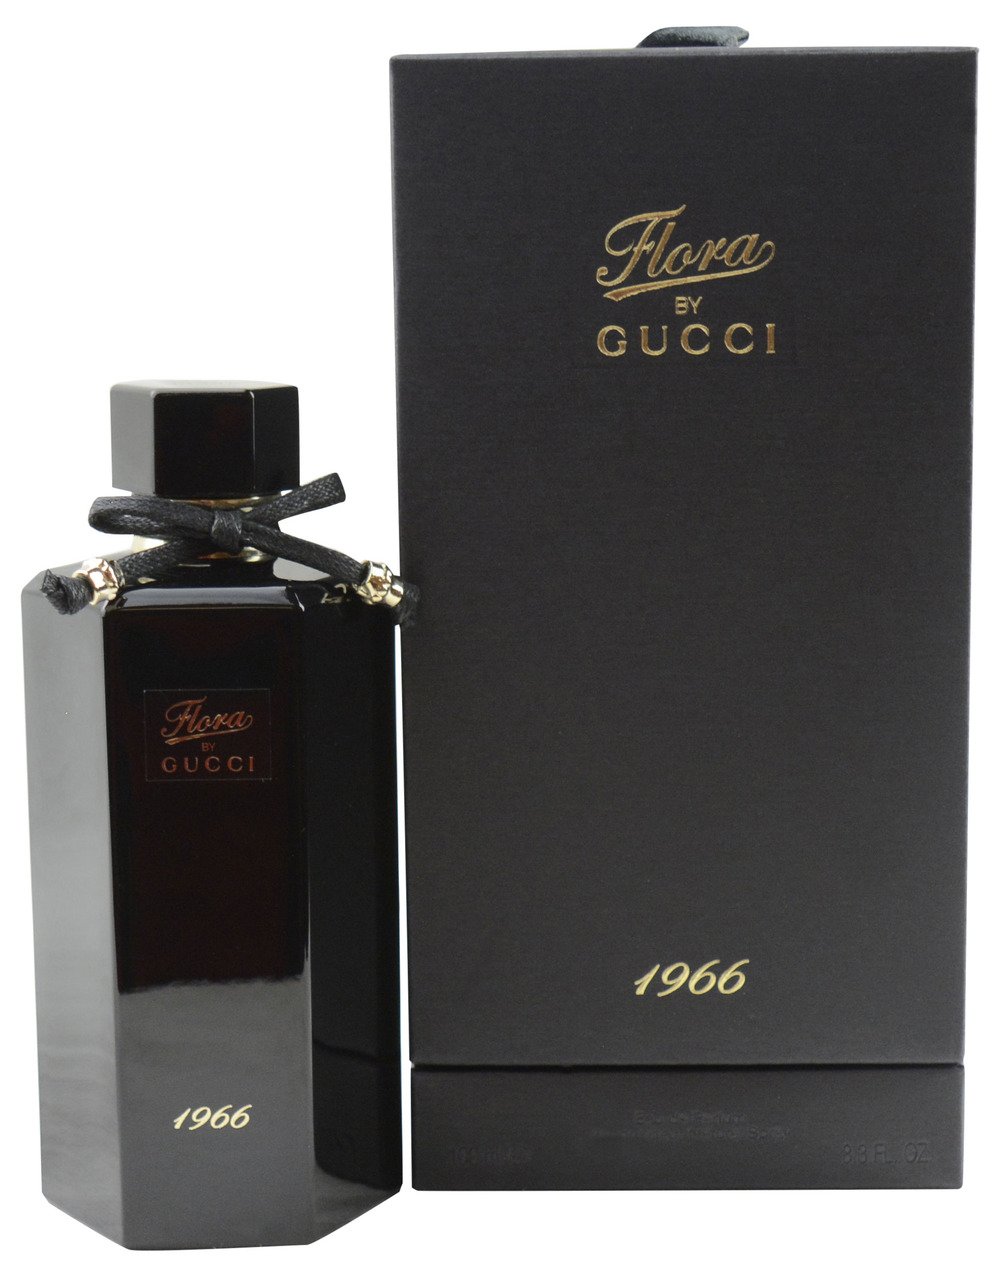 Gucci Flora 1966 Eau De Parfum Spray by Gucci Fragrance Review | Eau Talk -  The Official FragranceNet.com Blog